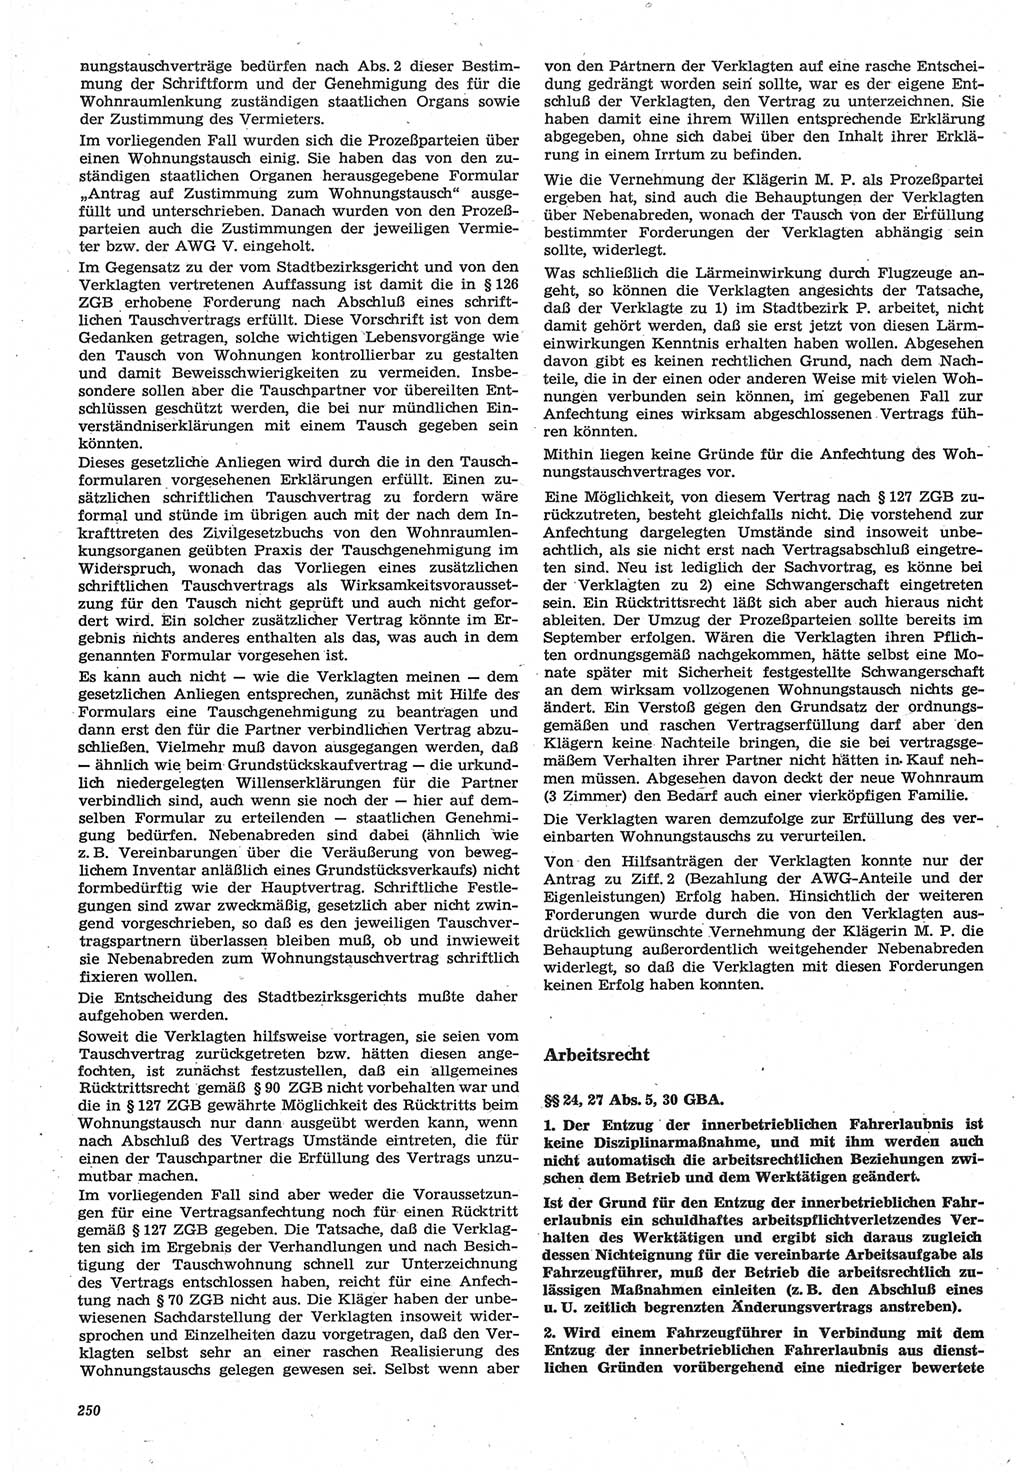 Neue Justiz (NJ), Zeitschrift für Recht und Rechtswissenschaft-Zeitschrift, sozialistisches Recht und Gesetzlichkeit, 31. Jahrgang 1977, Seite 250 (NJ DDR 1977, S. 250)